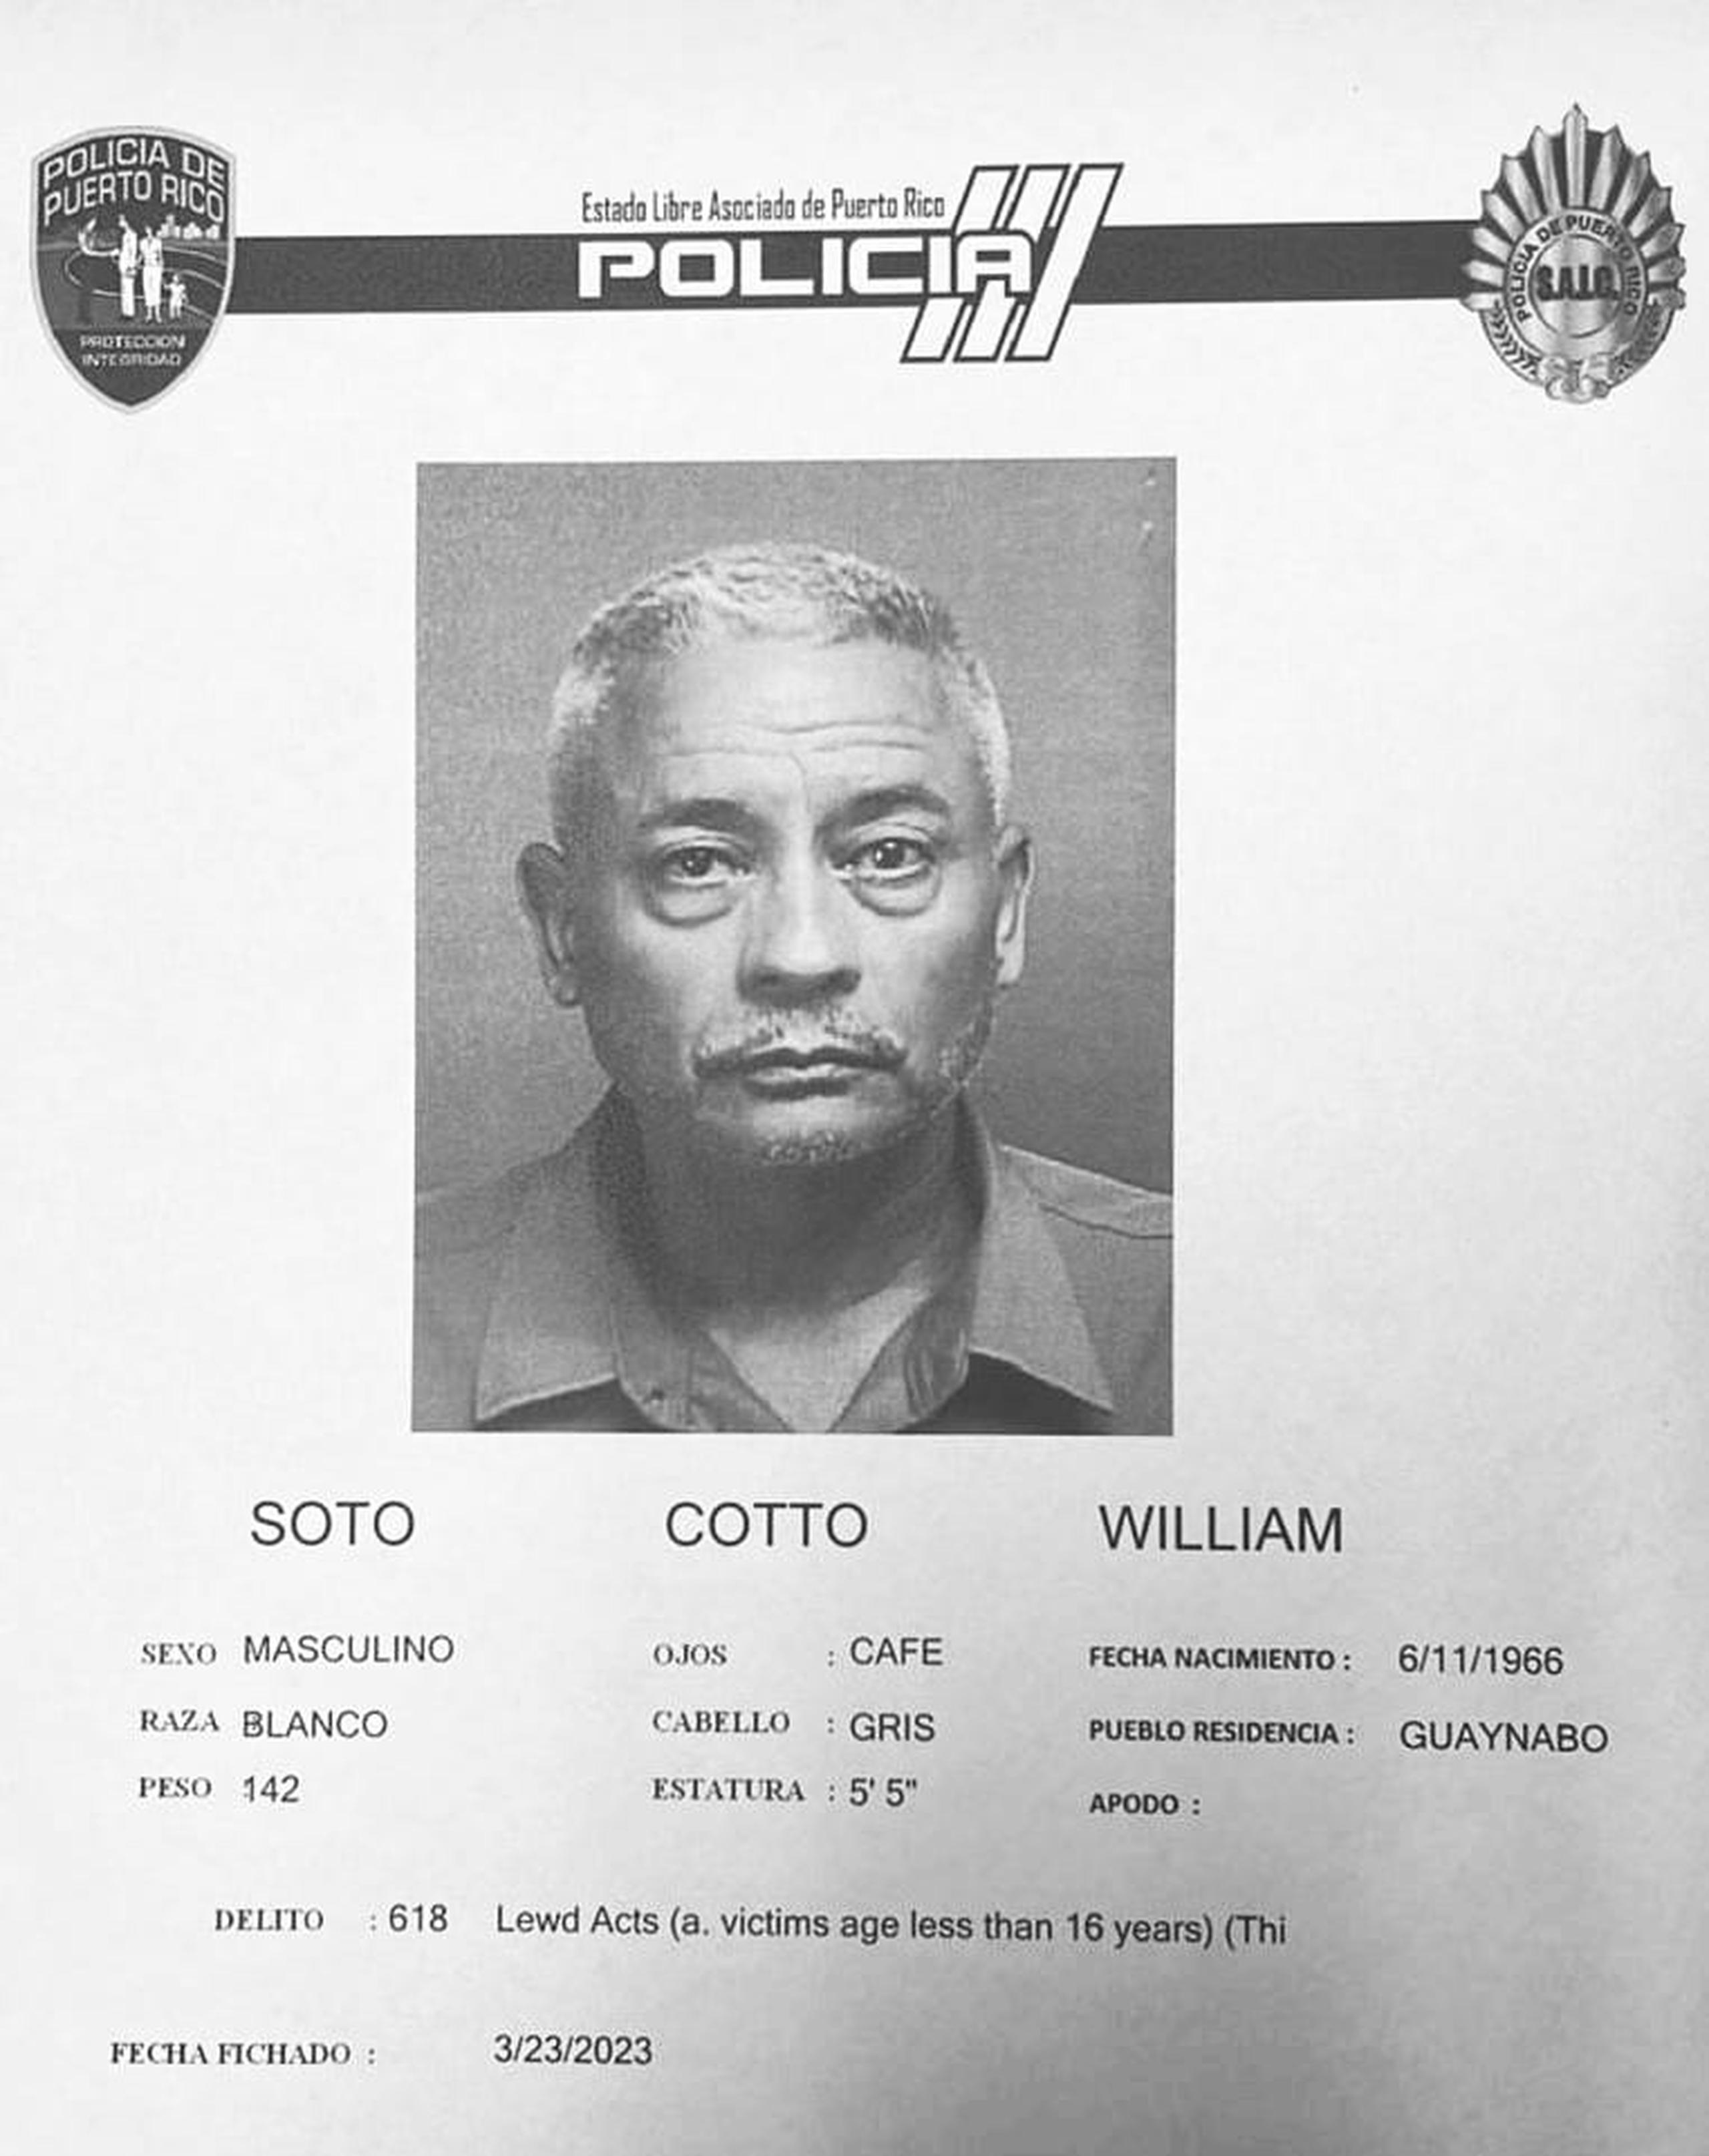 William Soto Cotto enfrenta acusaciones por actos lascivos contra una niña.